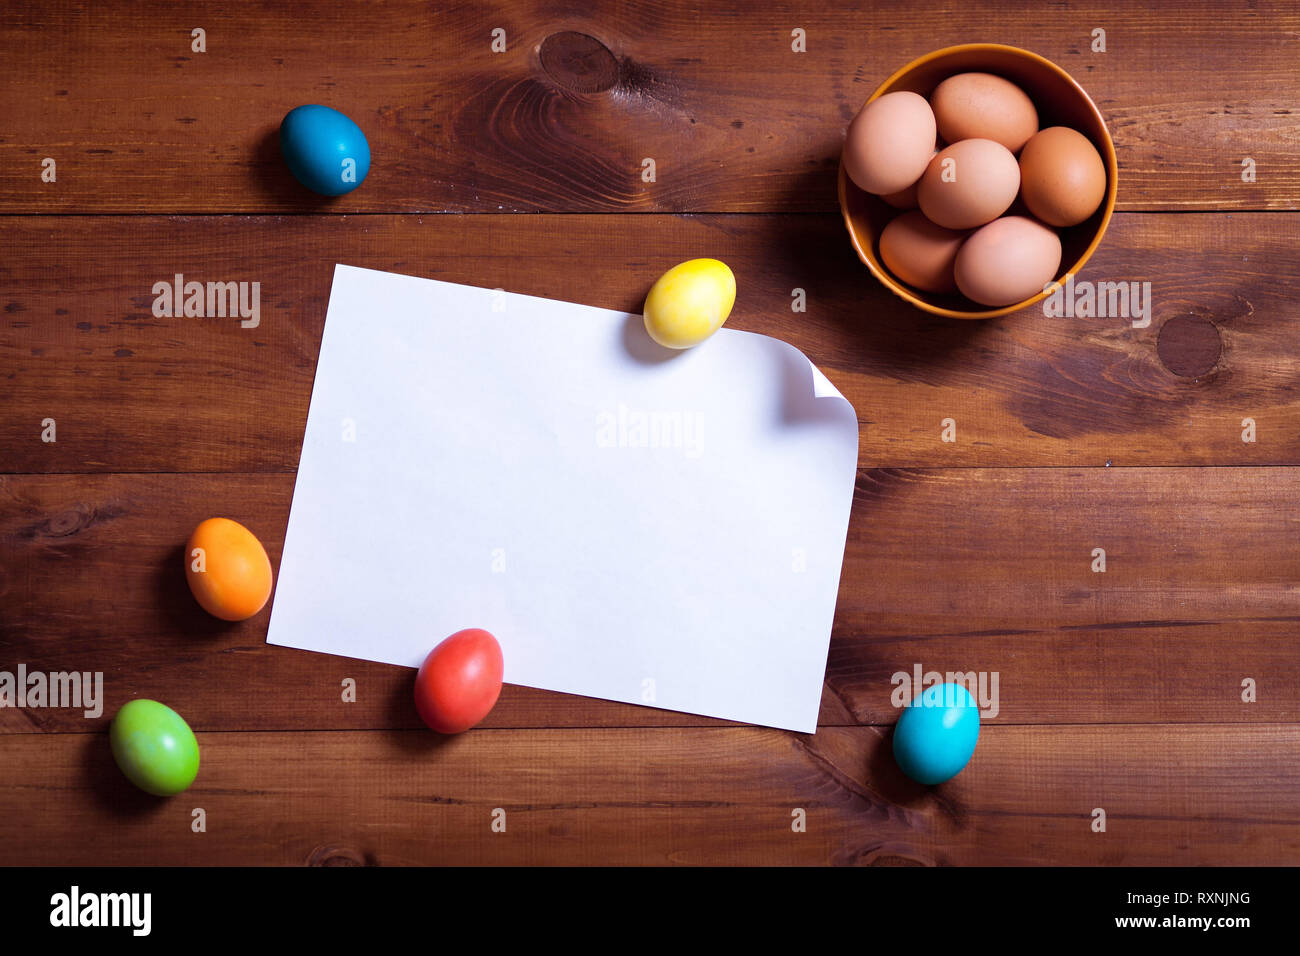 Frohe Ostern Hintergrund, bunte Eier und leeres weißes Papier auf braune Holztisch, Frühling Spaß dekoration design, traditionelle April celebrat Stockfoto